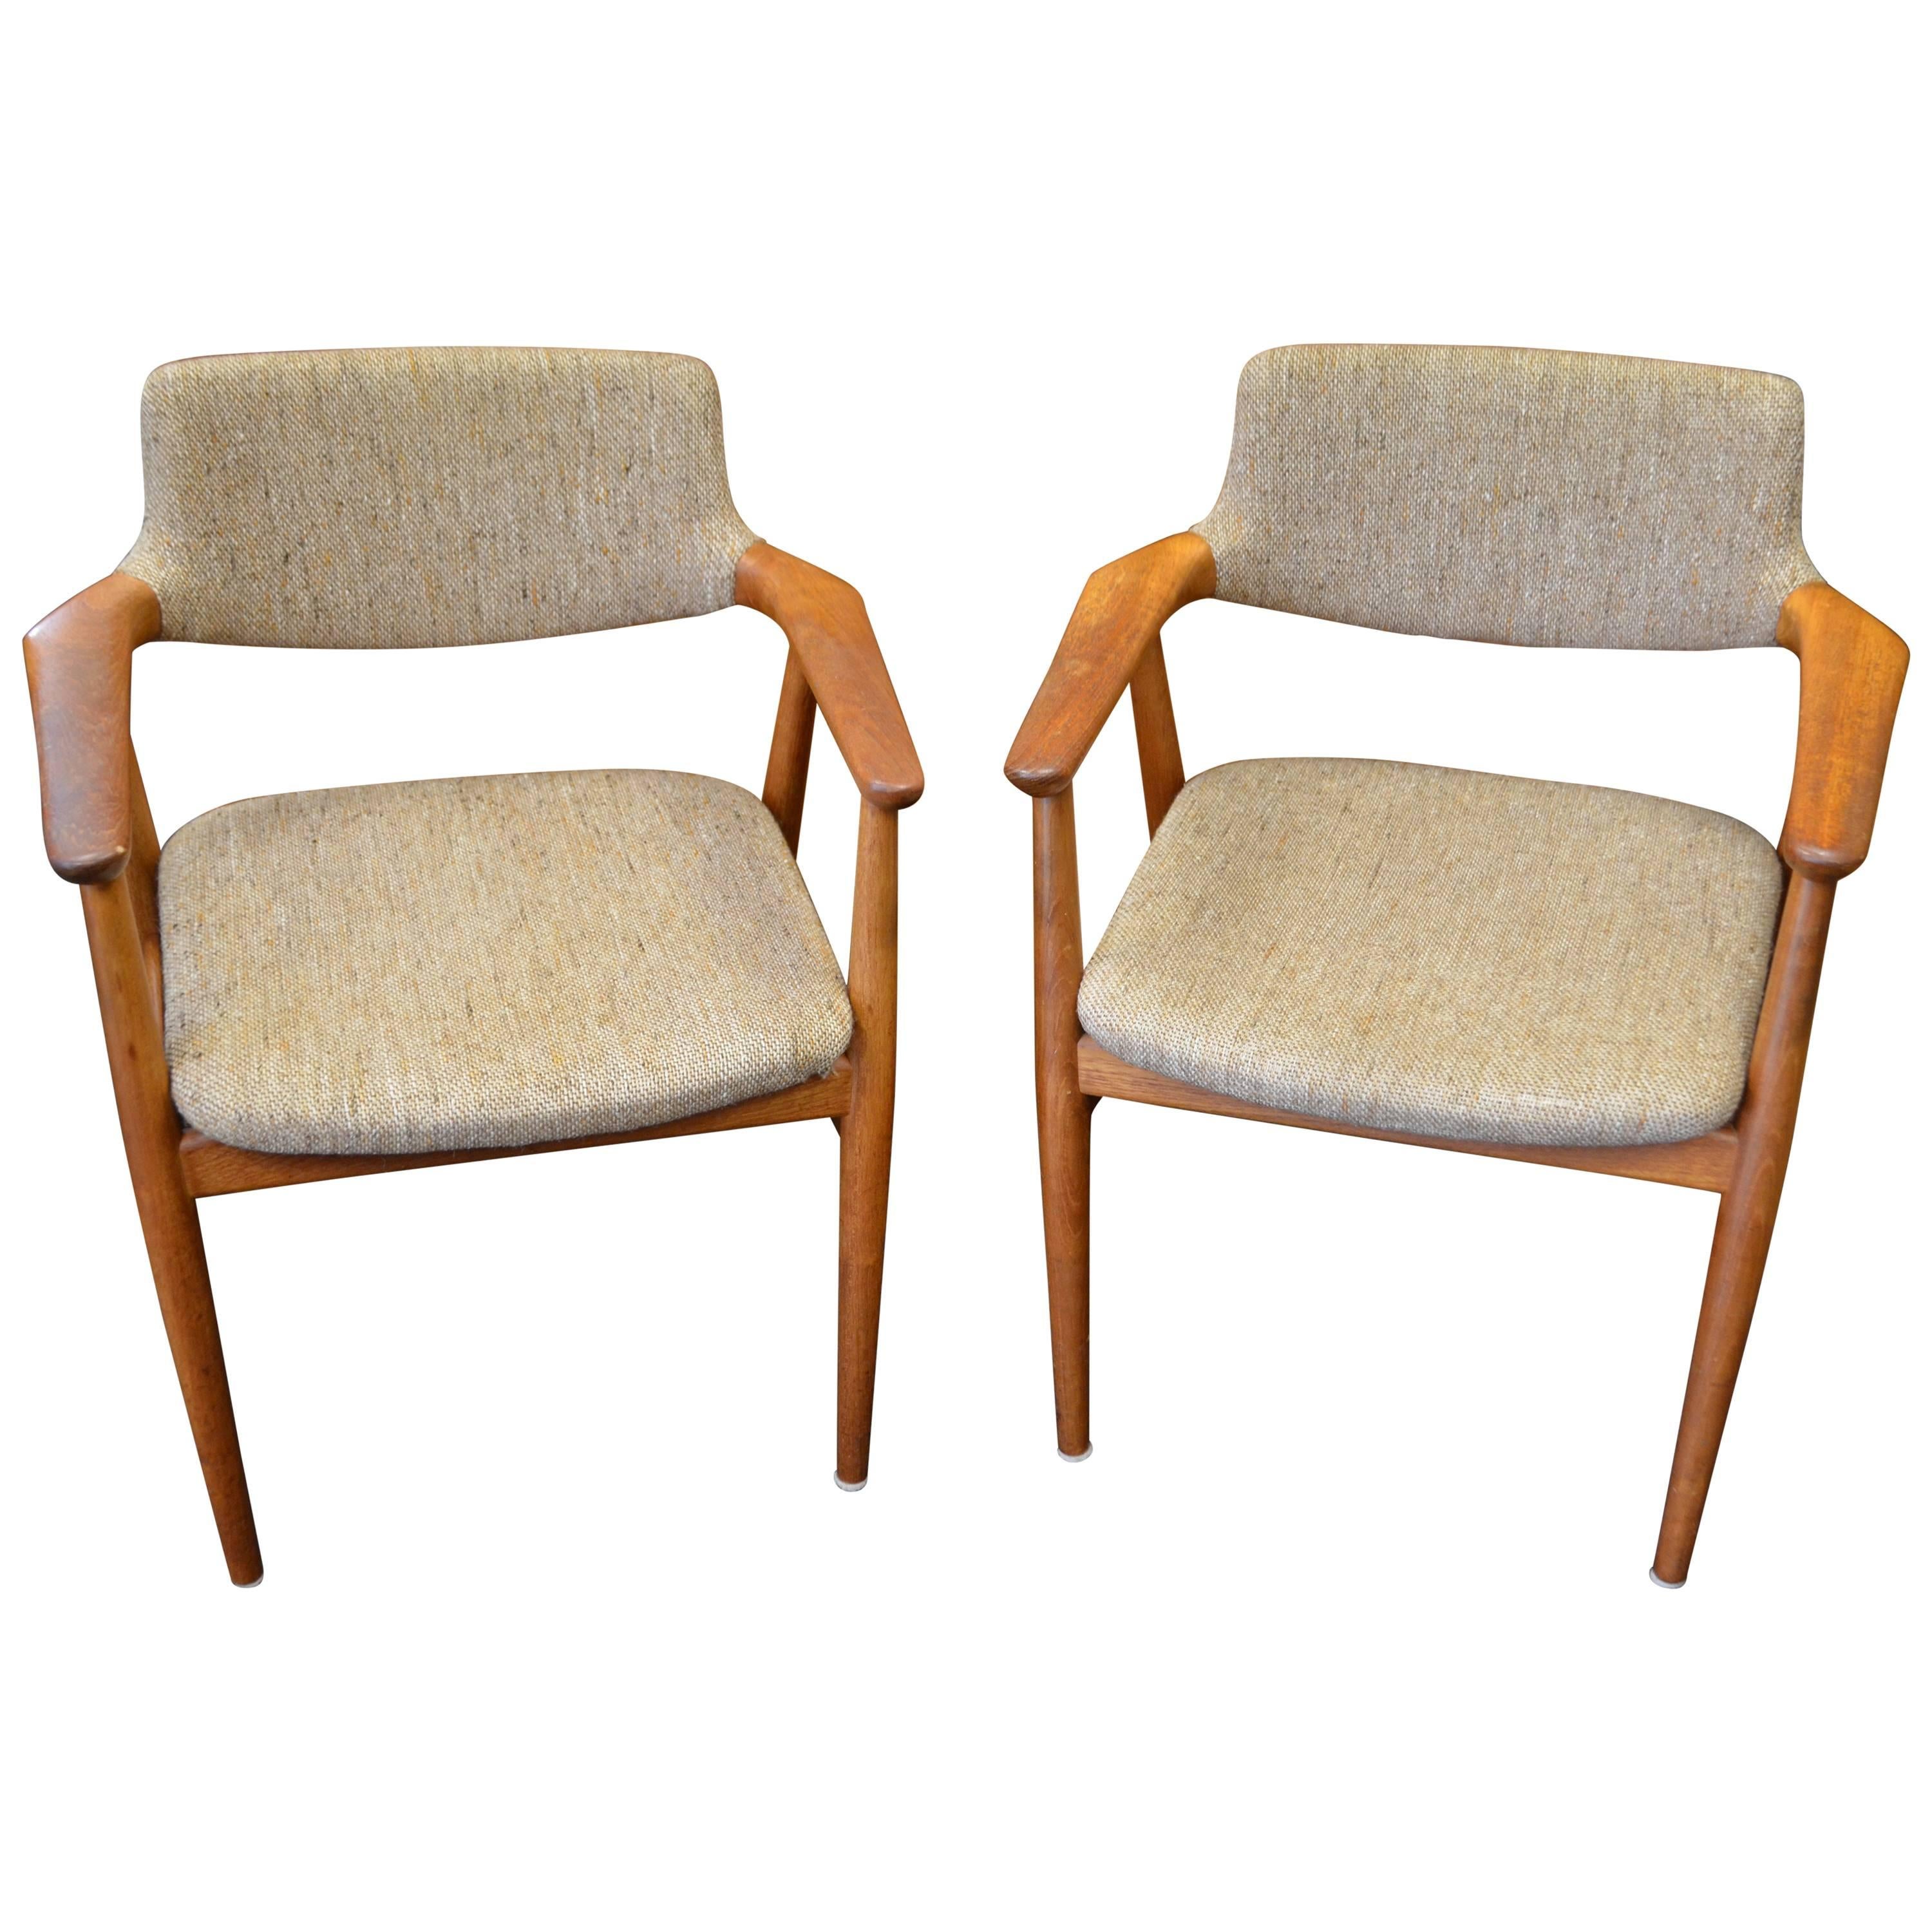 Midcentury Teak "Elbow" Chairs Designed by Erik Kirkegaard 'Pair'